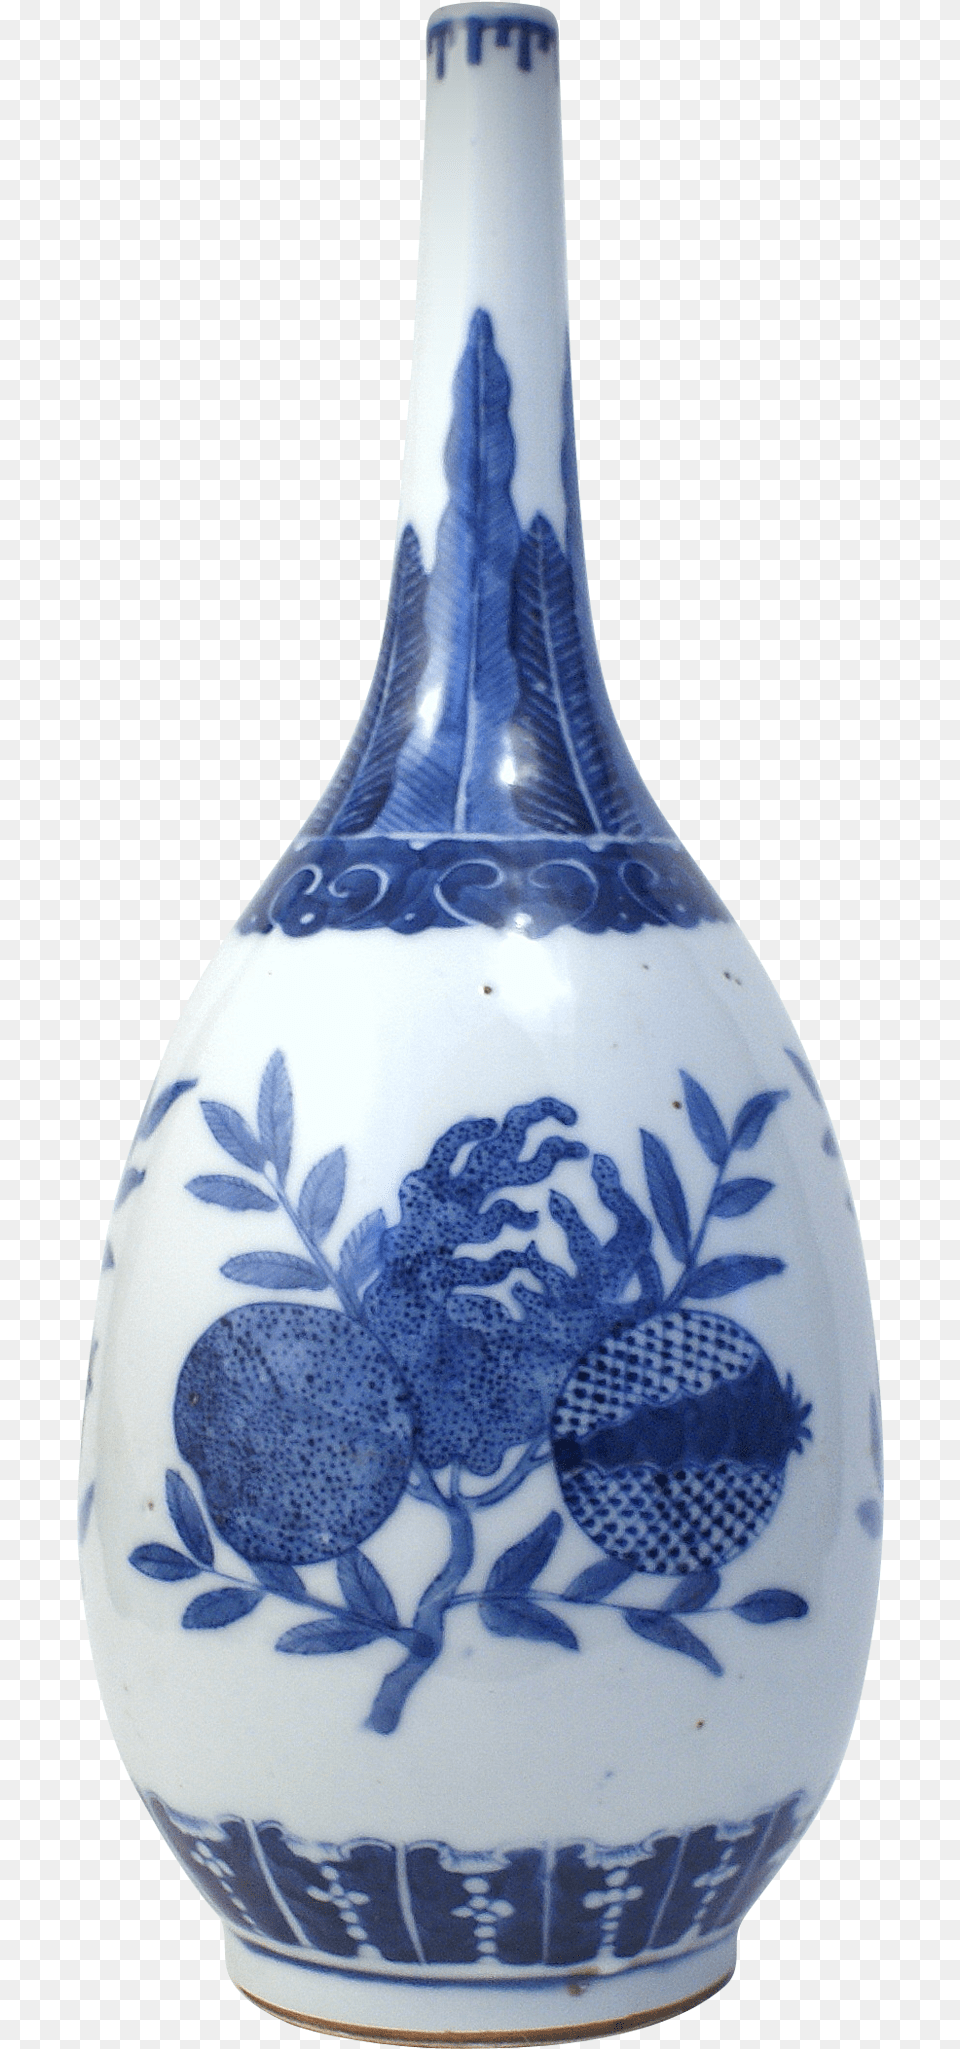 Vase Ming Vase Transparent Background, Art, Porcelain, Pottery, Jar Png Image